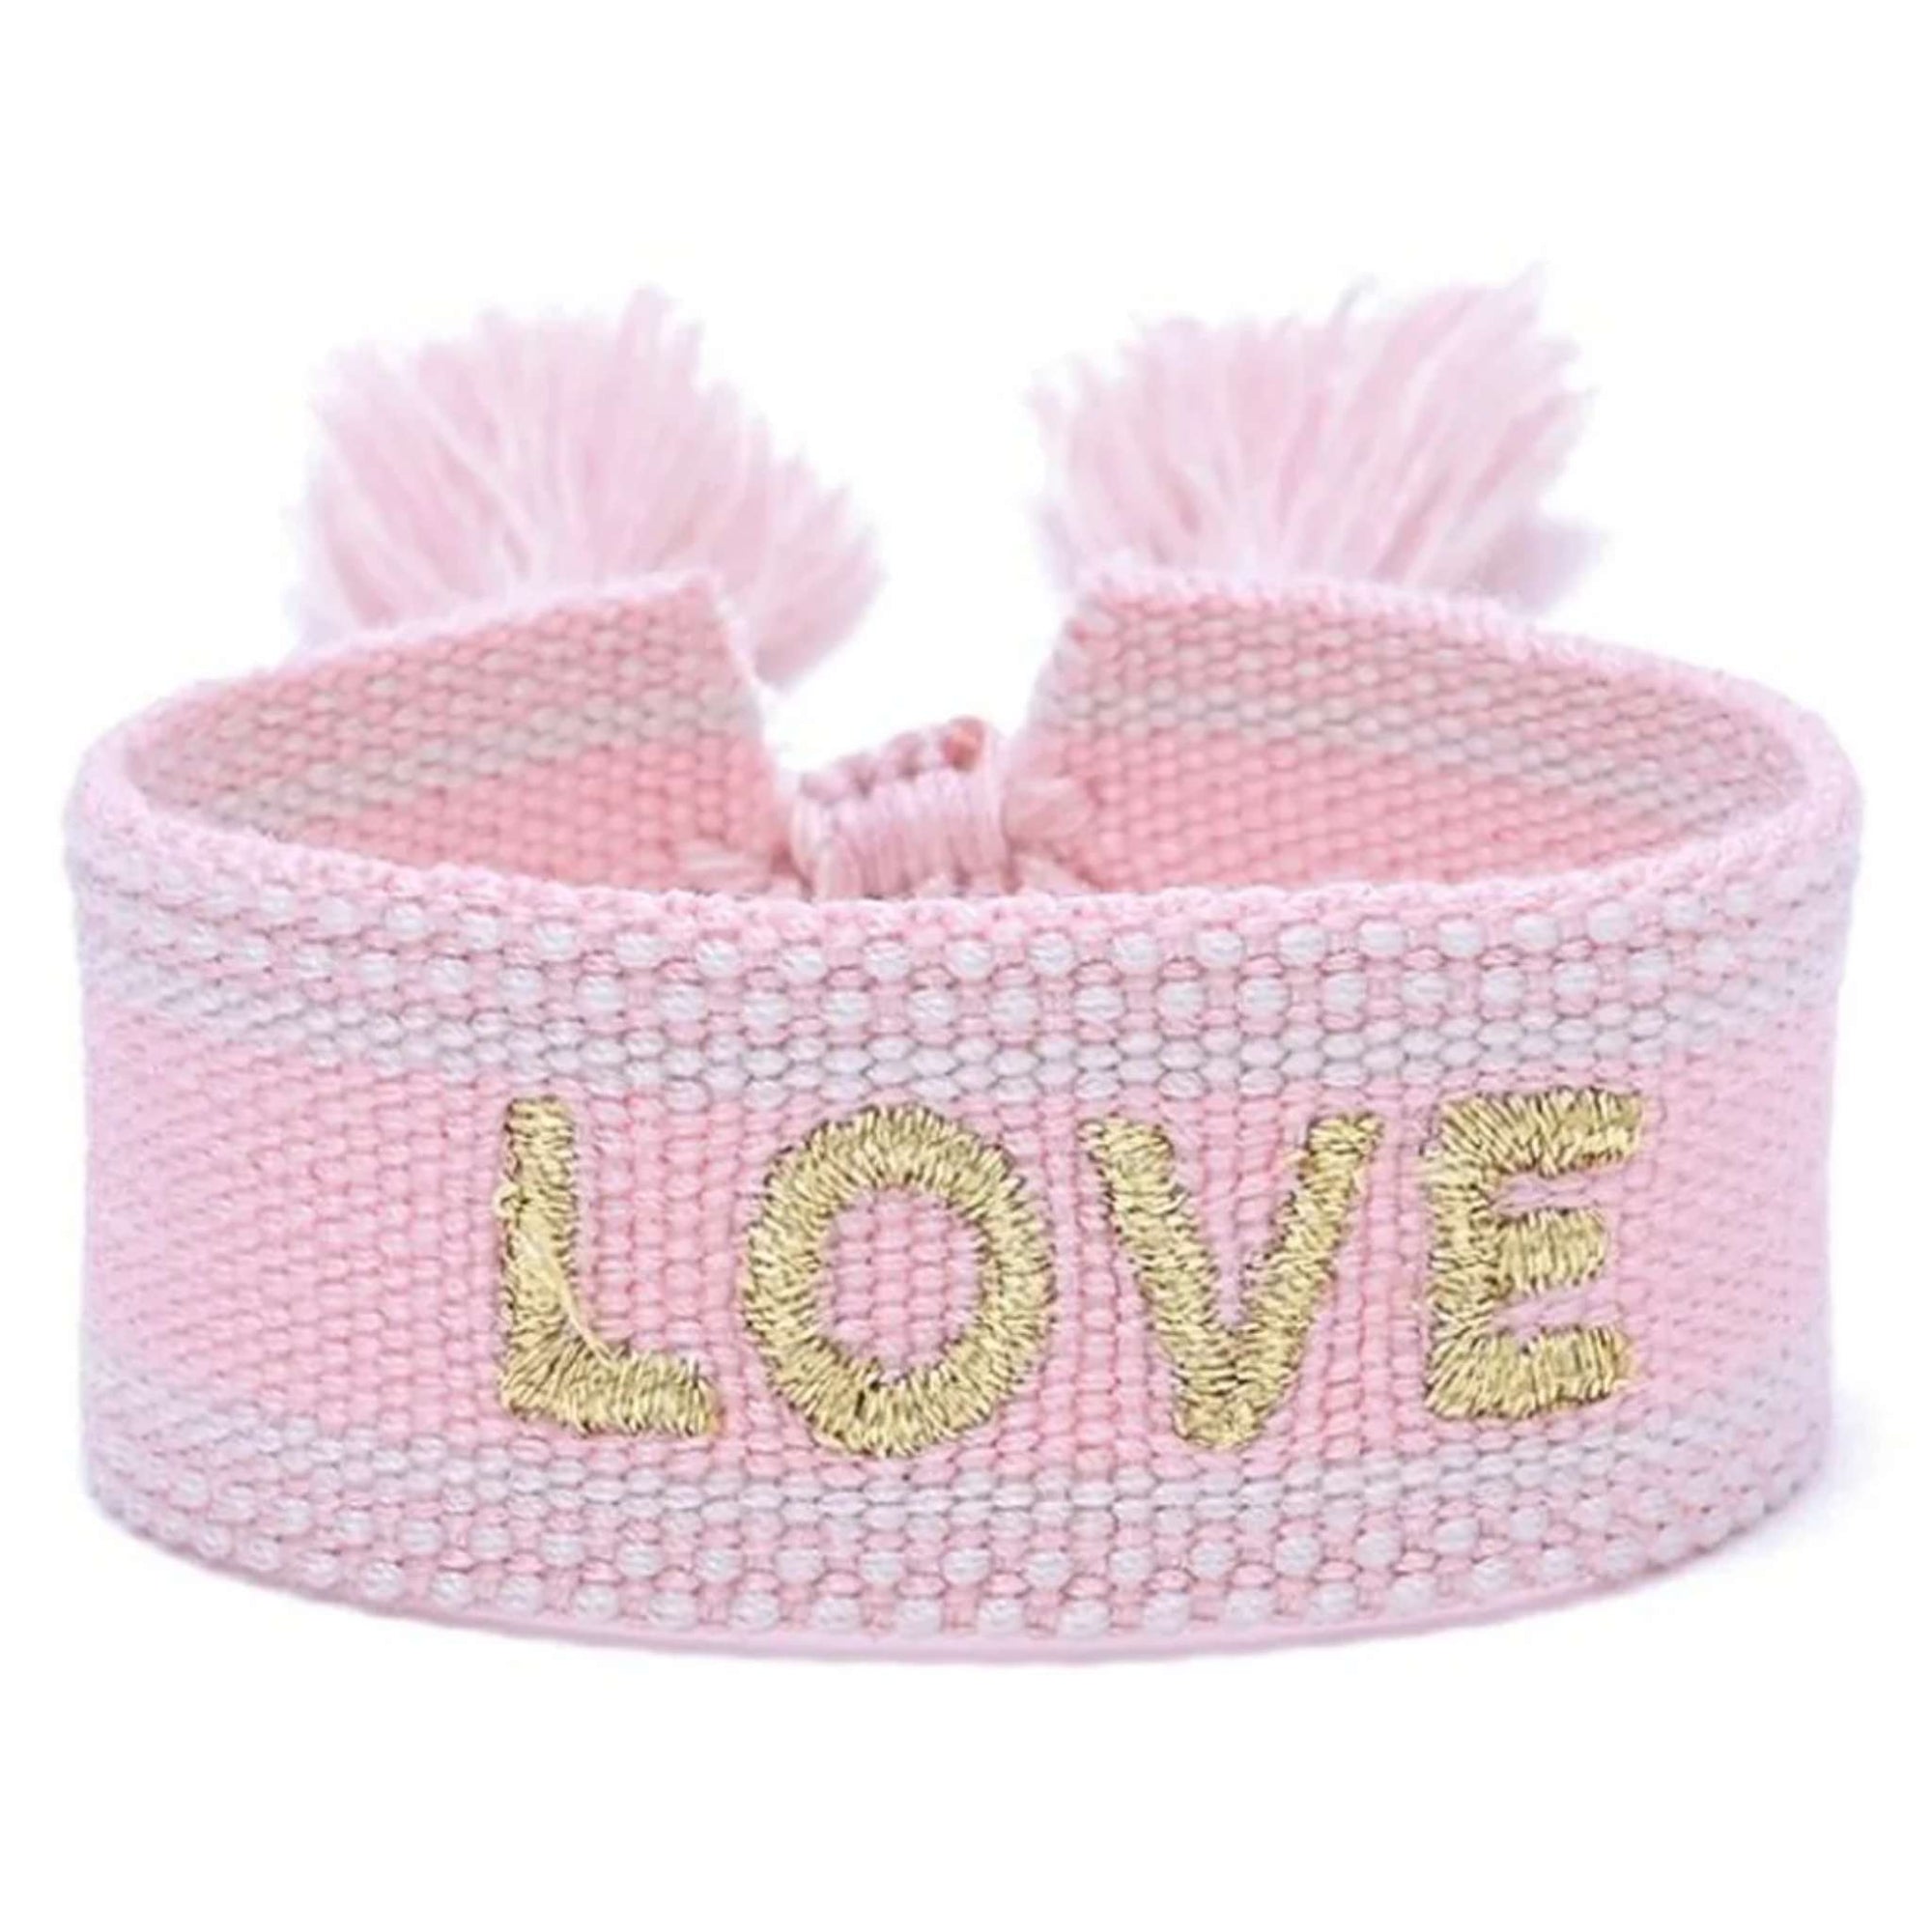 Woven Bracelet - Pink Love